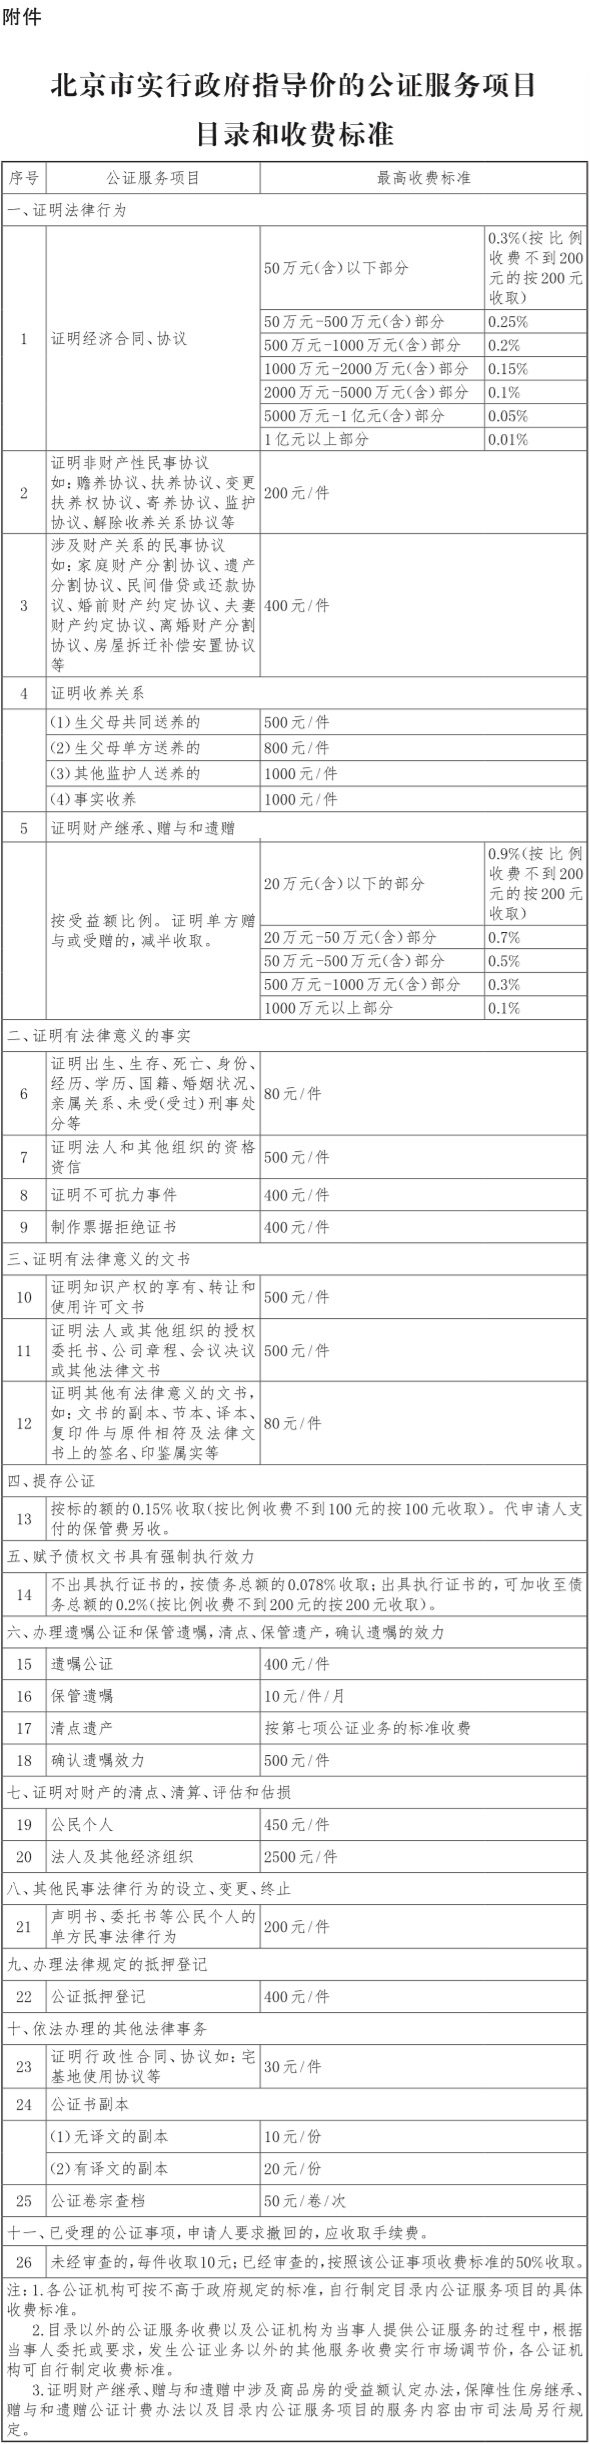 北京市实行政府指导价的公证服务项目目录和收费标准